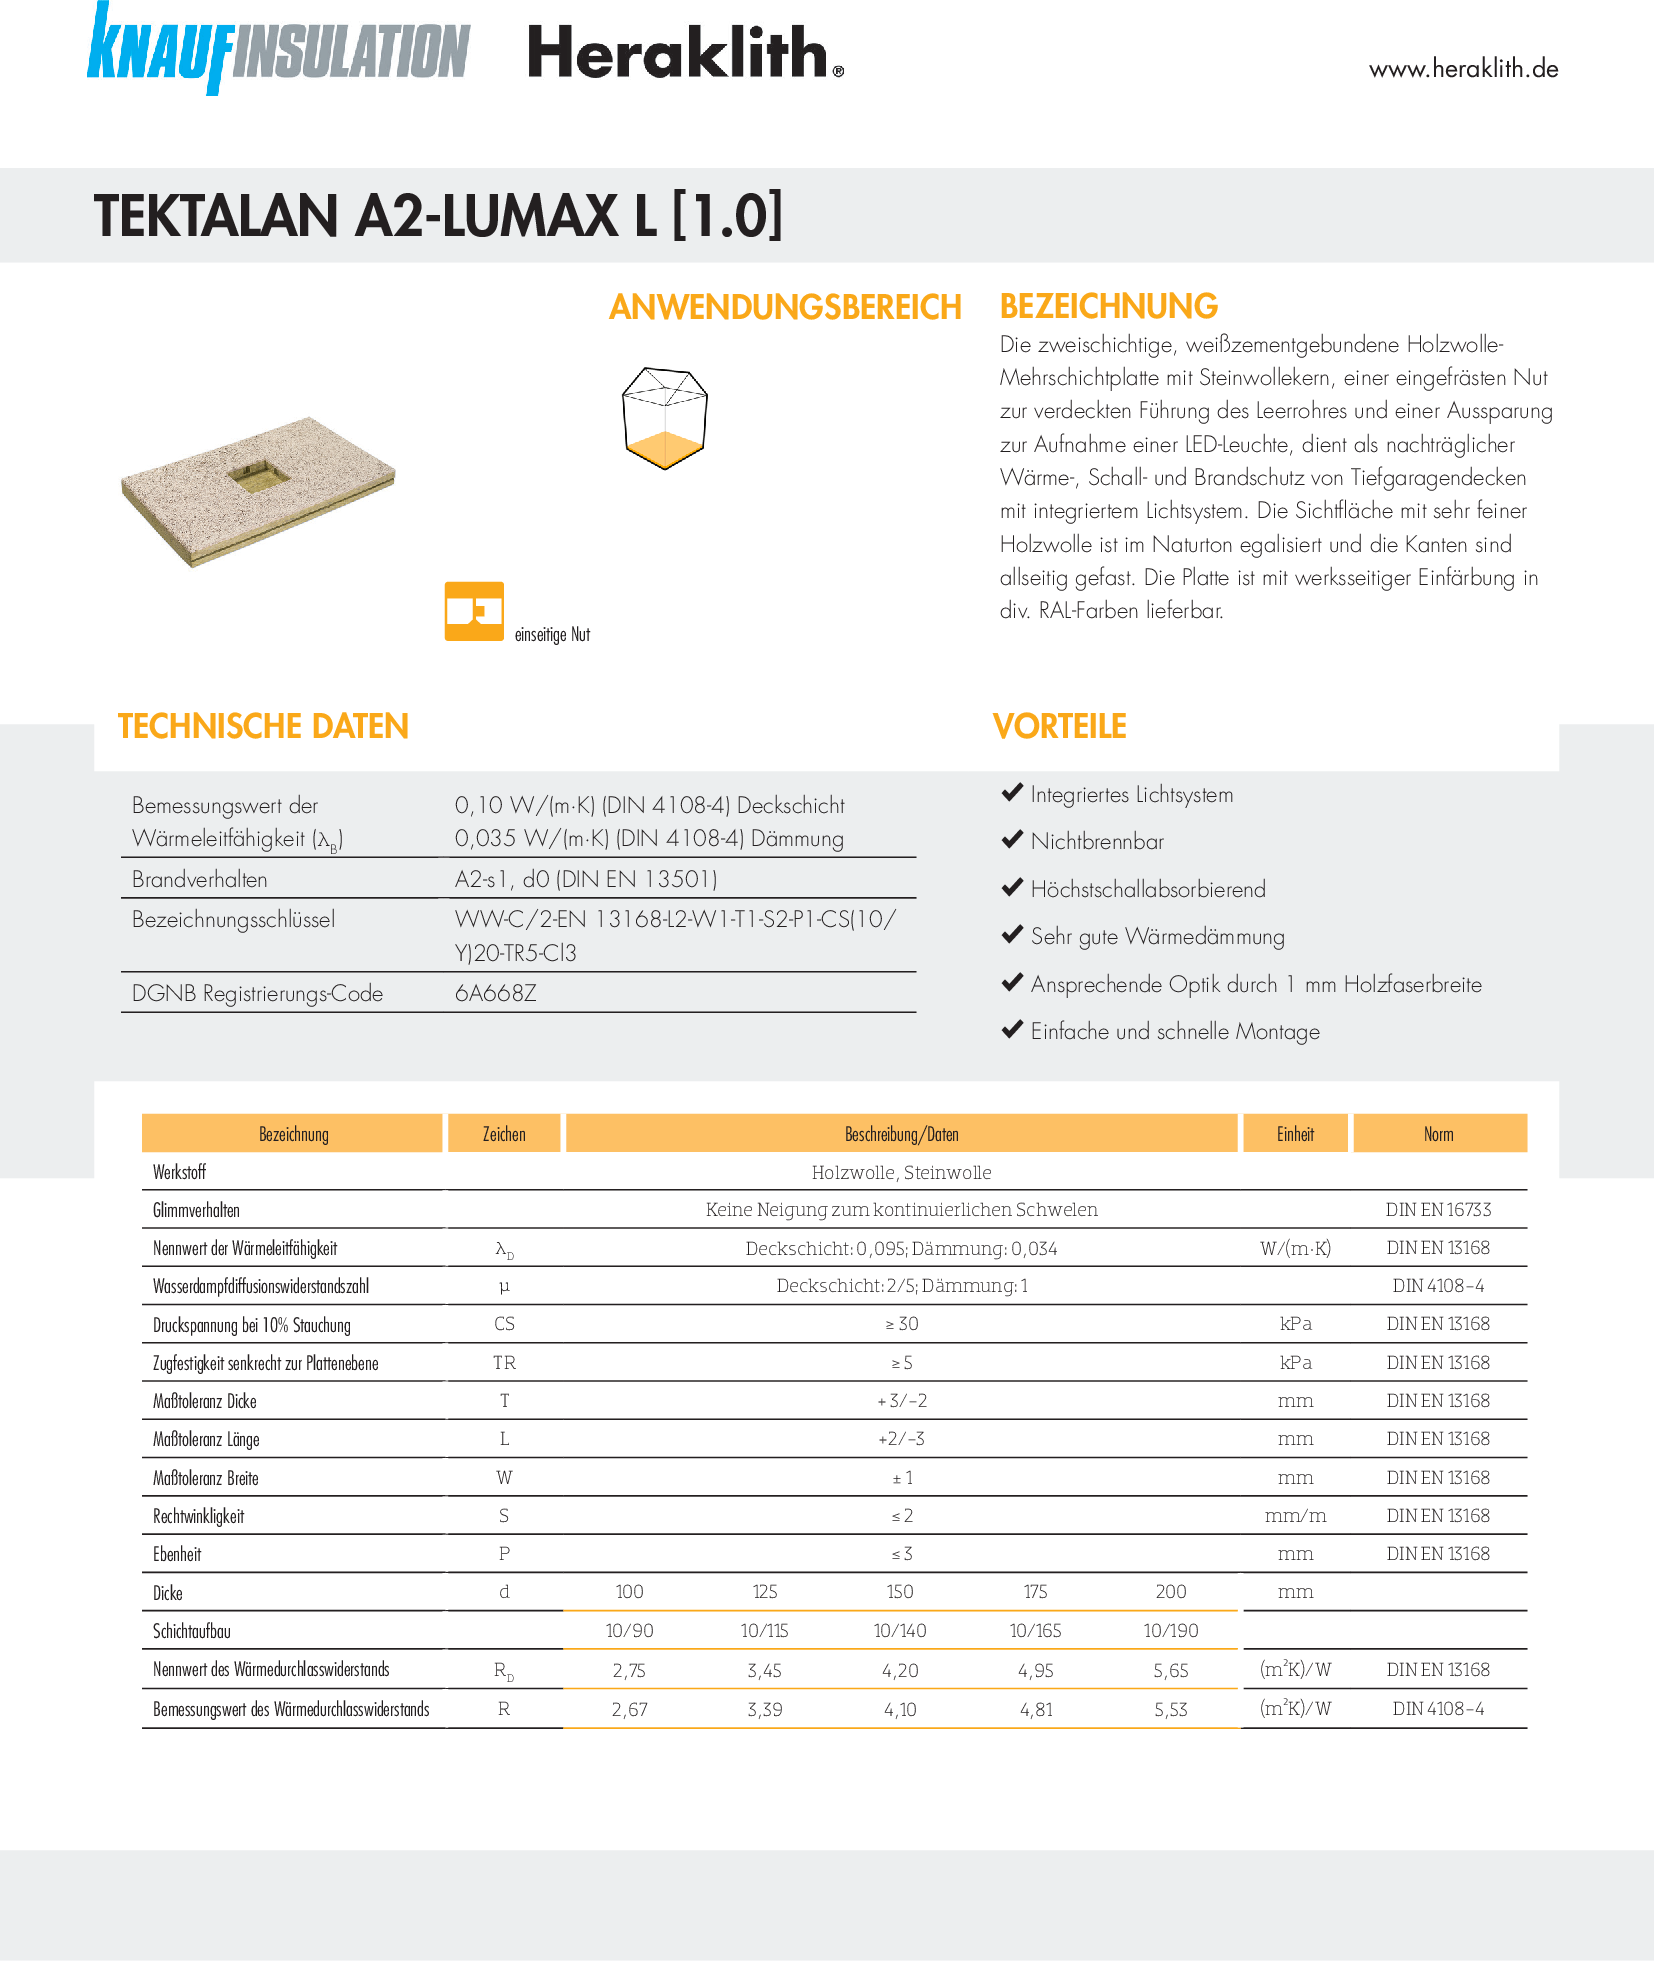 Datenblatt Tektalan A2-Lumax L [1.0]